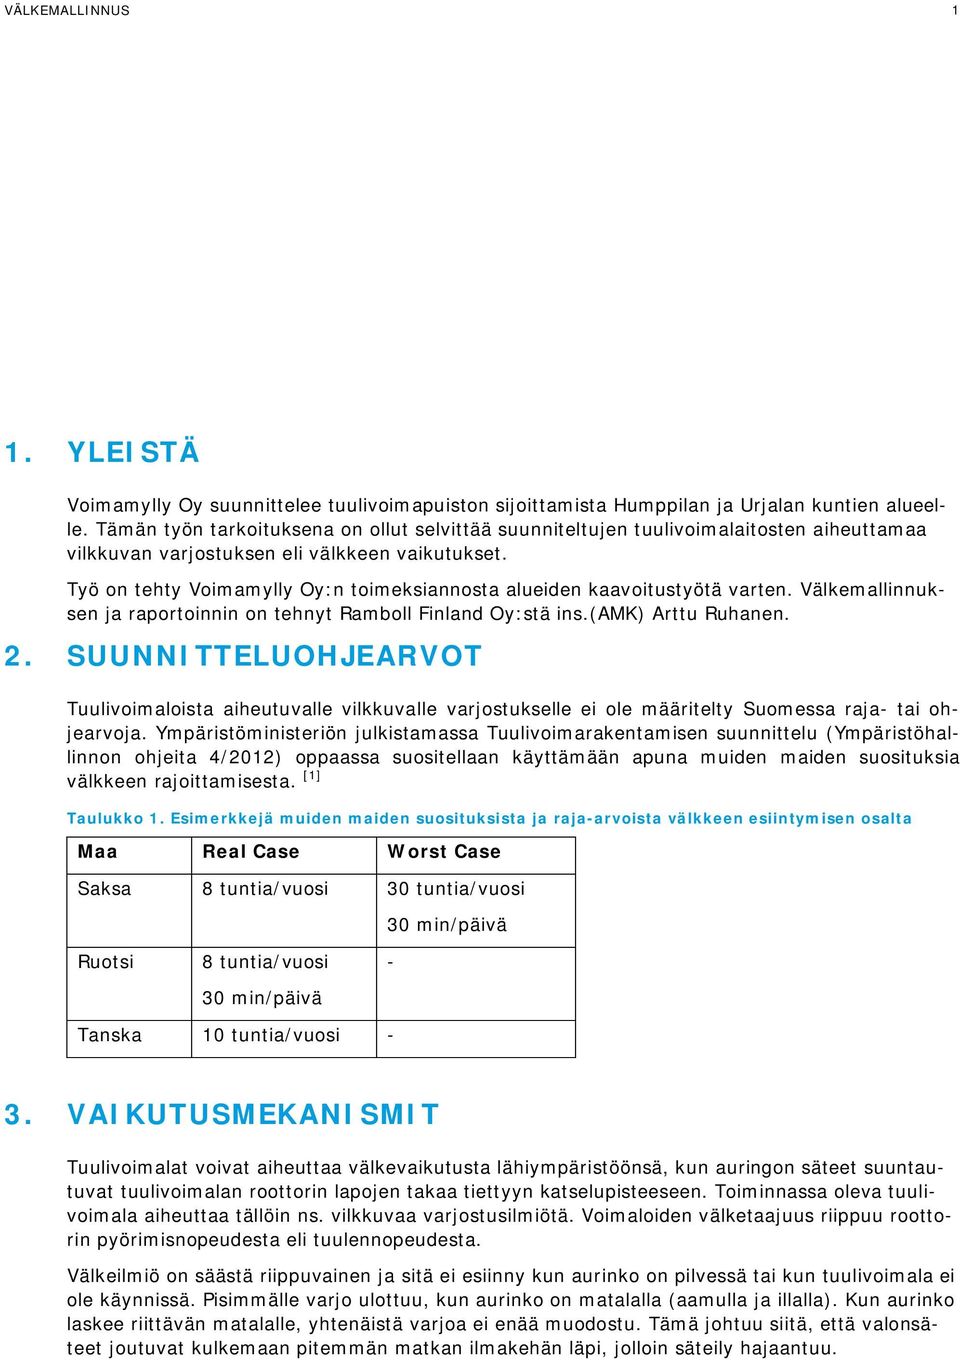 Työ on tehty Voimamylly Oy:n toimeksiannosta alueiden kaavoitustyötä varten. Välkemallinnuksen ja raportoinnin on tehnyt Ramboll Finland Oy:stä ins.(amk) Arttu Ruhanen. 2.